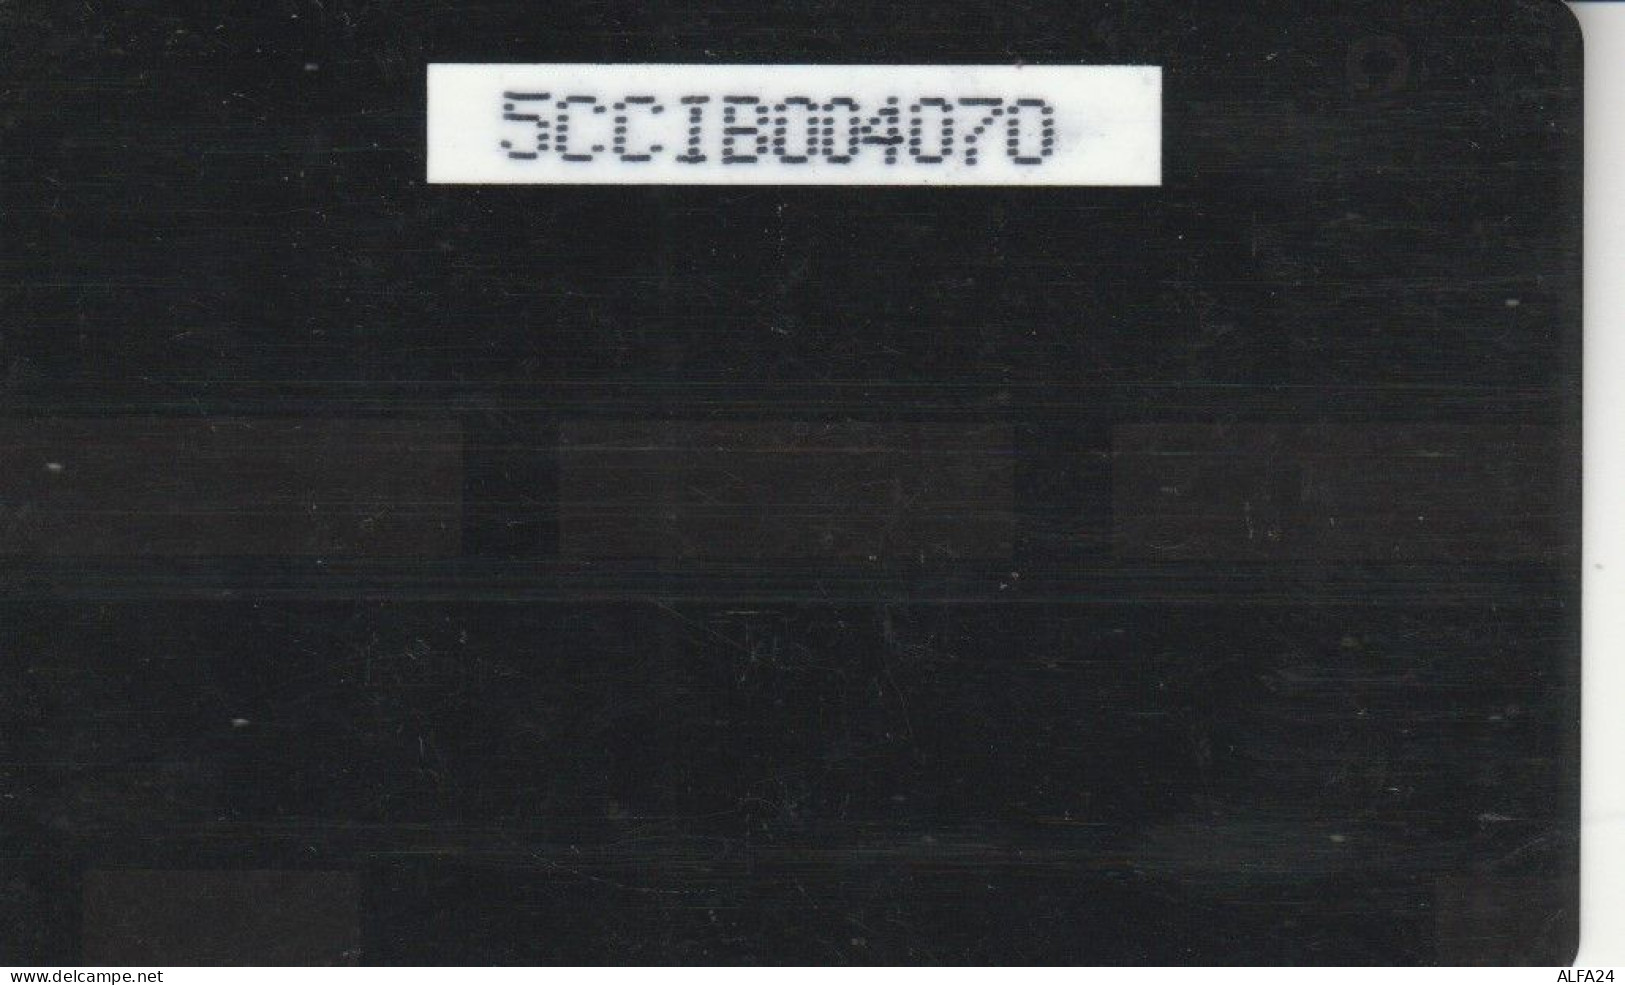 PHONE CARD CAYMAN ISLAND (E82.12.5 - Islas Caimán